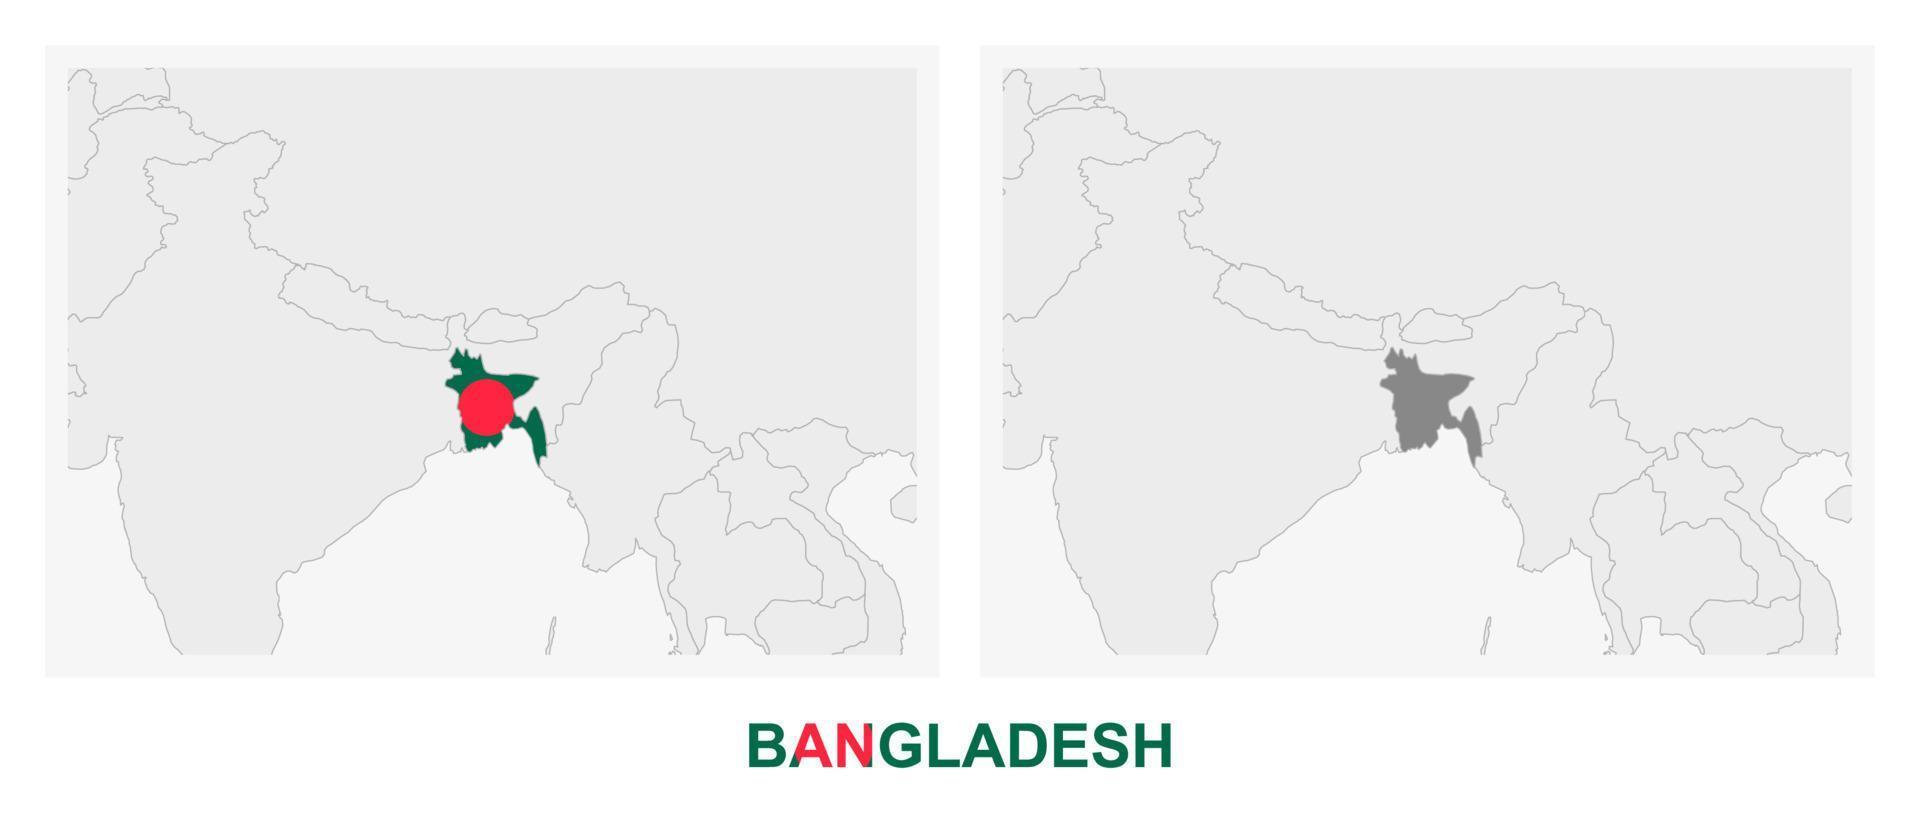 deux versions de la carte du bangladesh, avec le drapeau du bangladesh et surlignées en gris foncé. vecteur